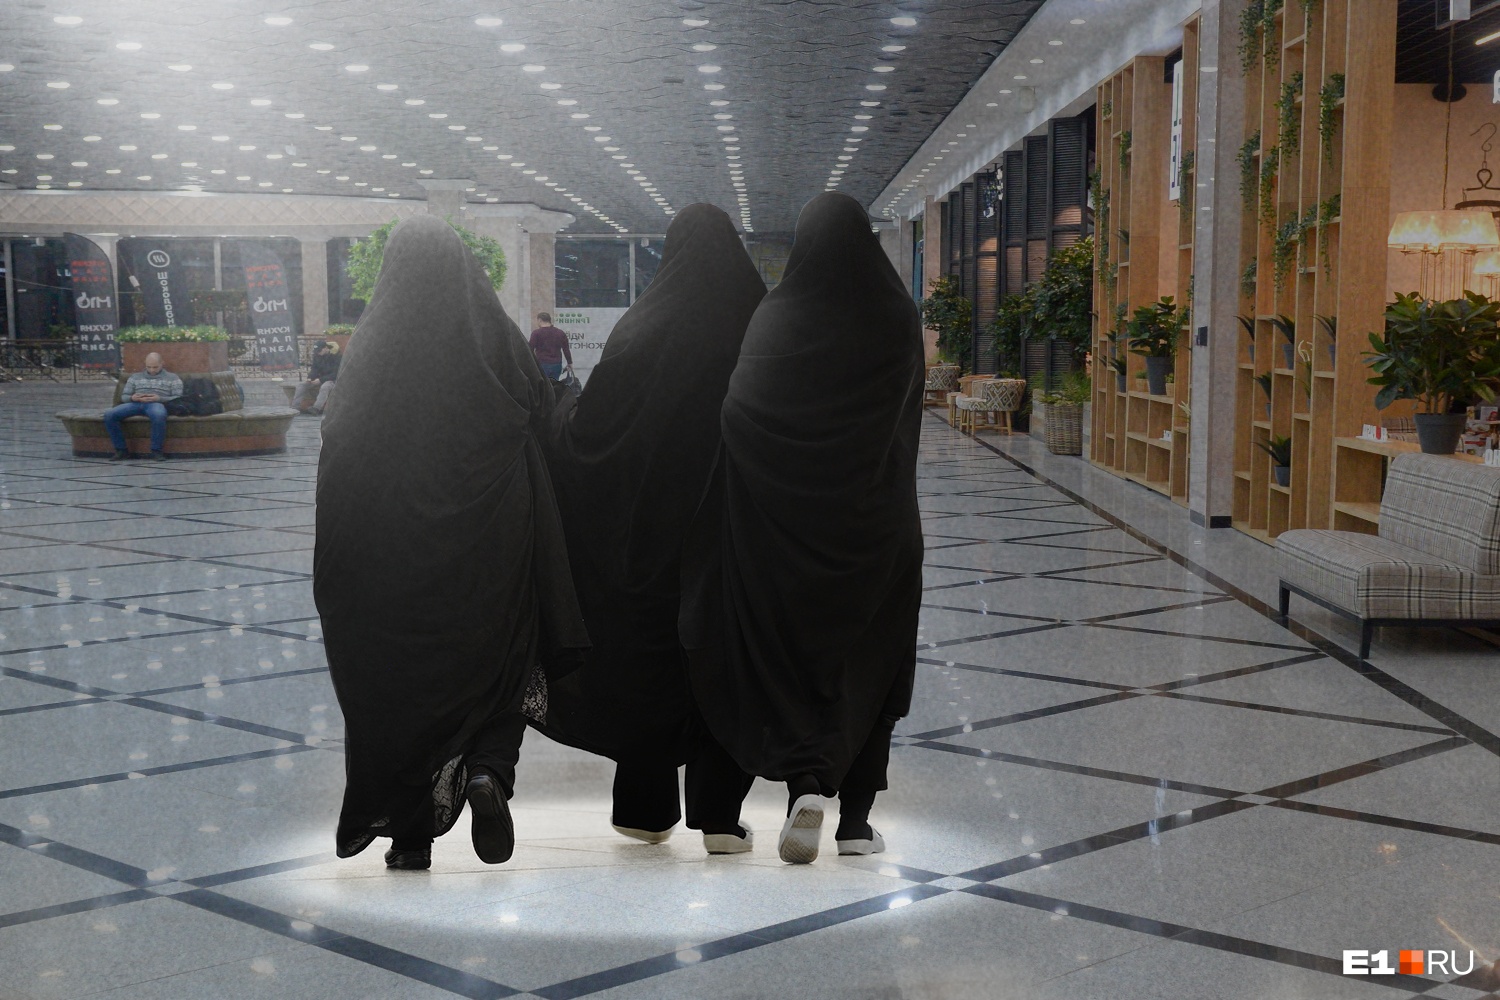 «Что ерундой занимаешься? В секту попала?»: как россиянки принимают ислам и надевают хиджаб